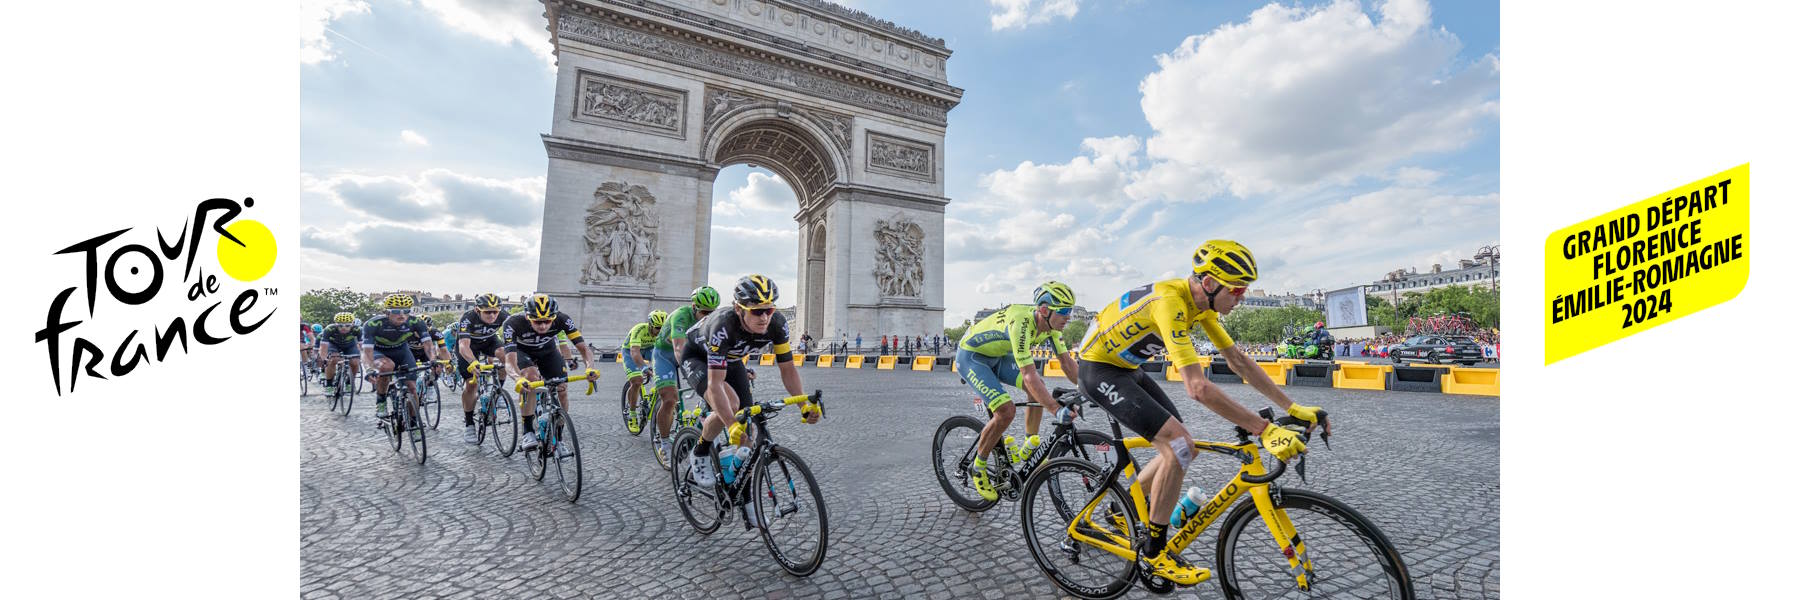 Tour de France: il Trofeo della Grand Départ arriva a Cervia